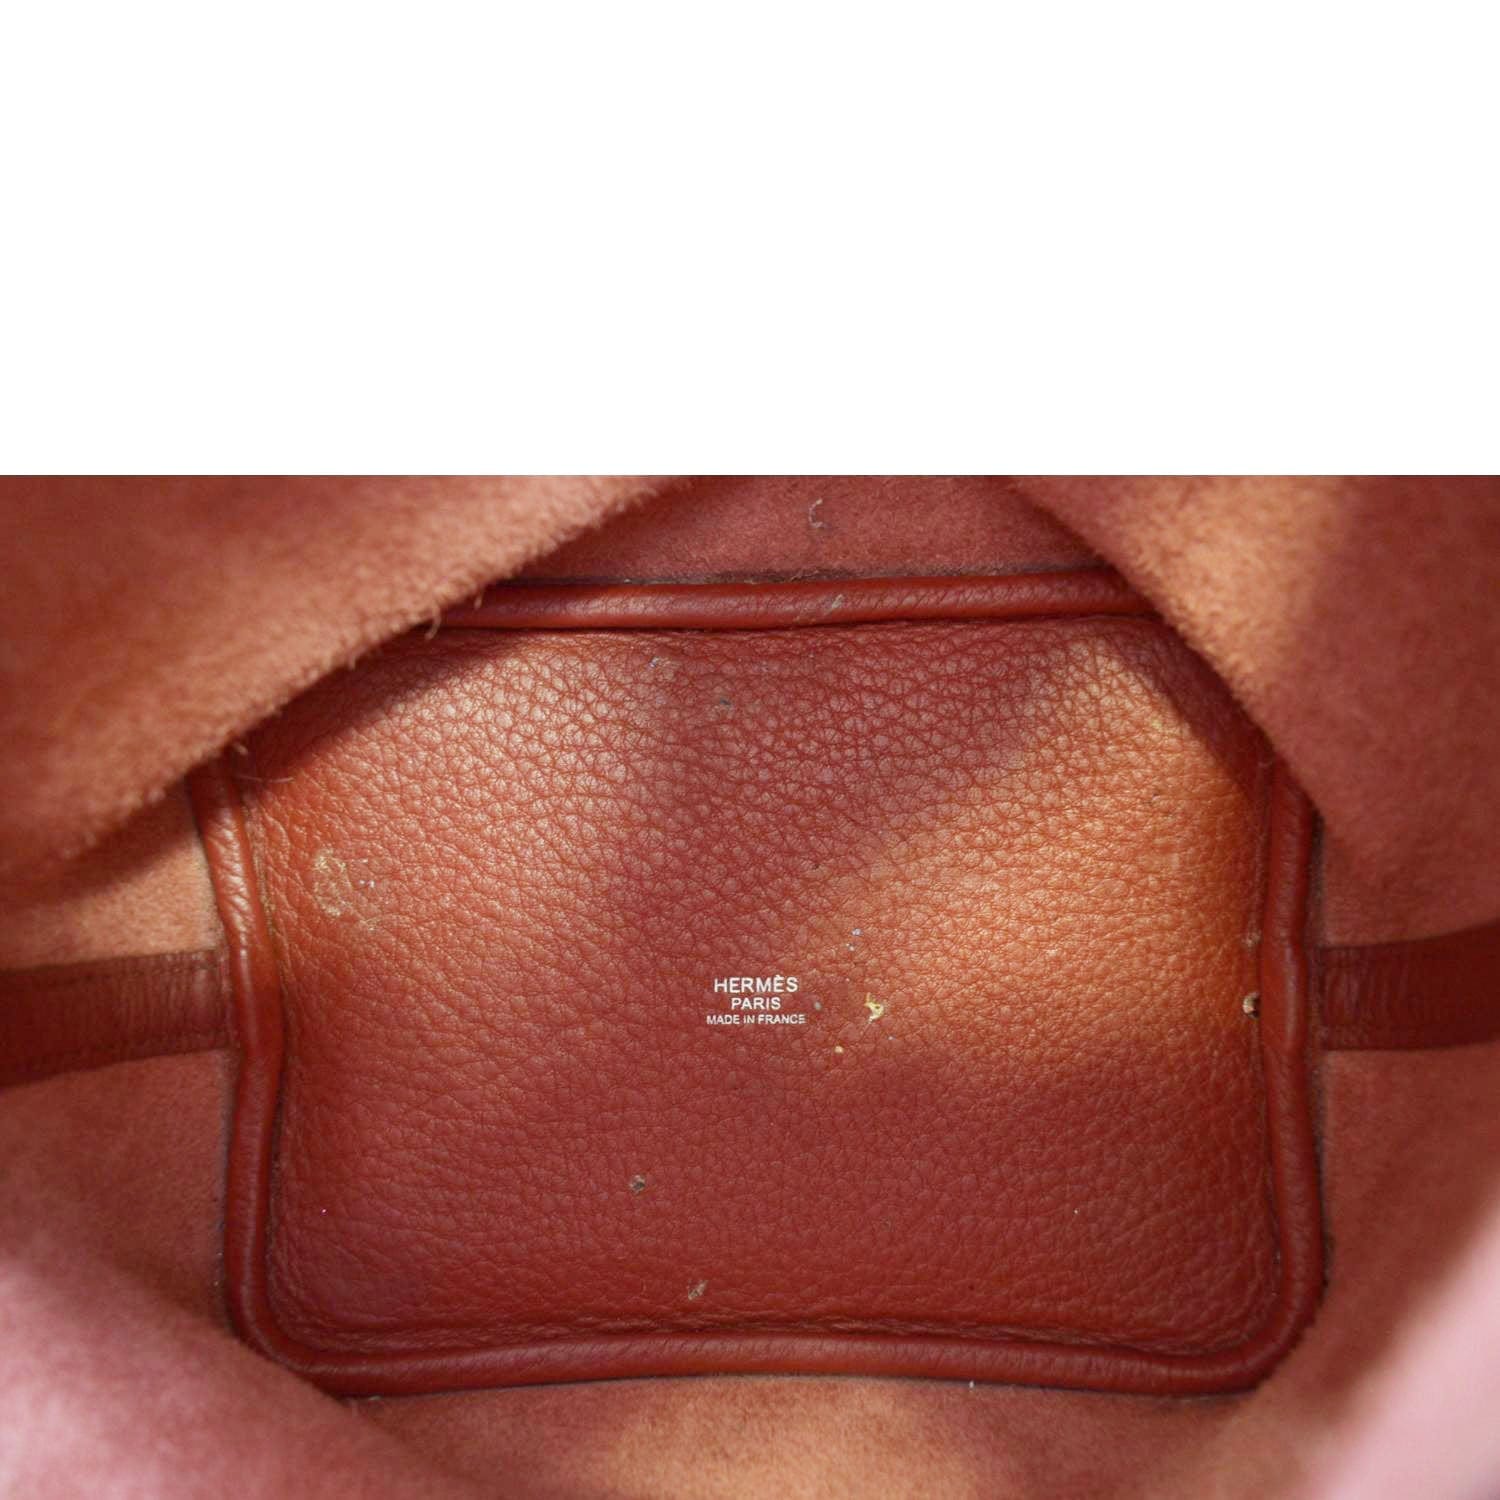 Hermes Picotin Lock 18 Taurillon Clemence Leather Hobo Bag Burgundy